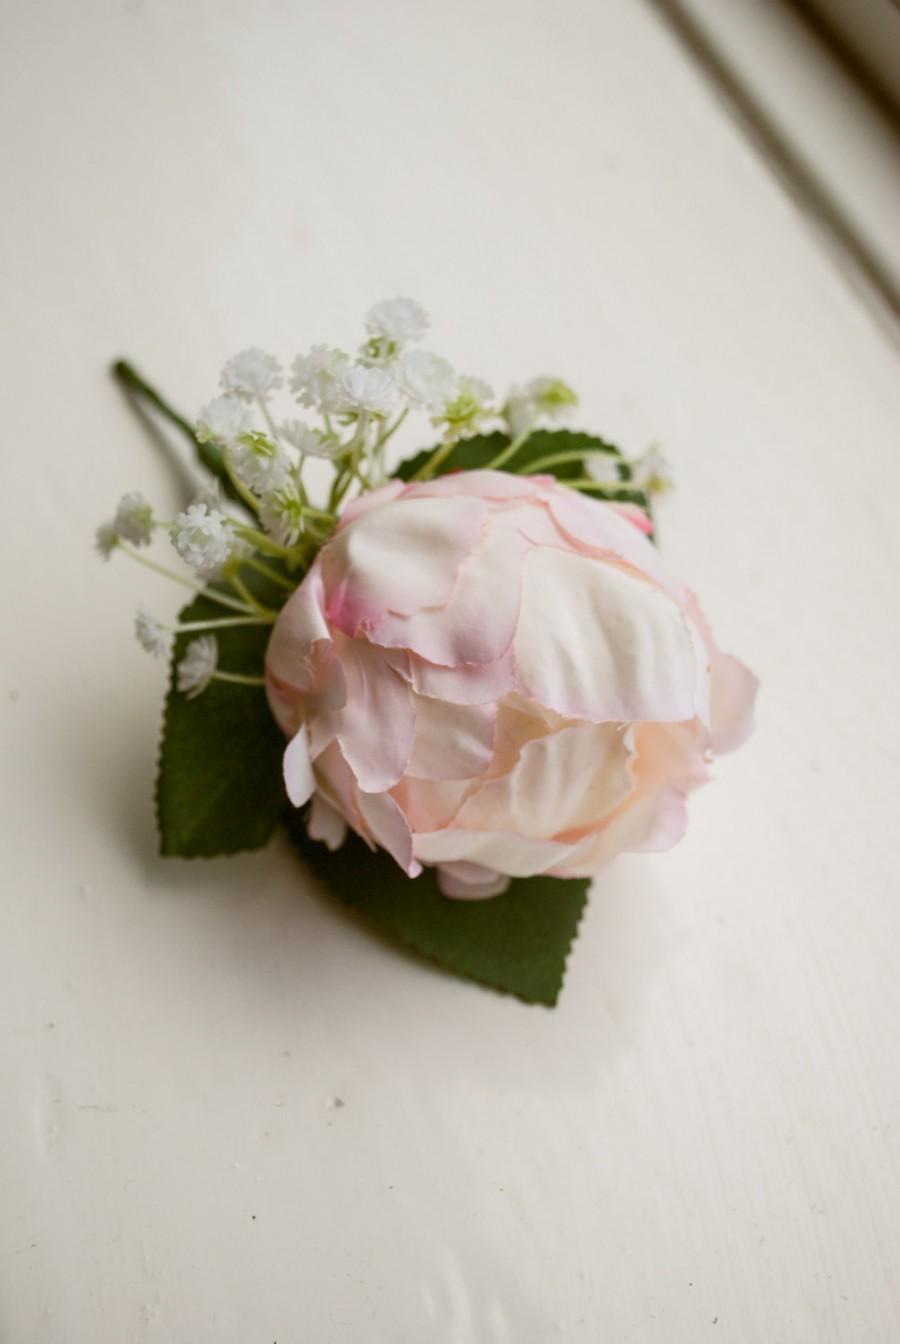 زفاف - Blush pink silk wedding buttonhole / boutineer. Made from an artificial peony, a gypsophilia cluster and simple greenery.